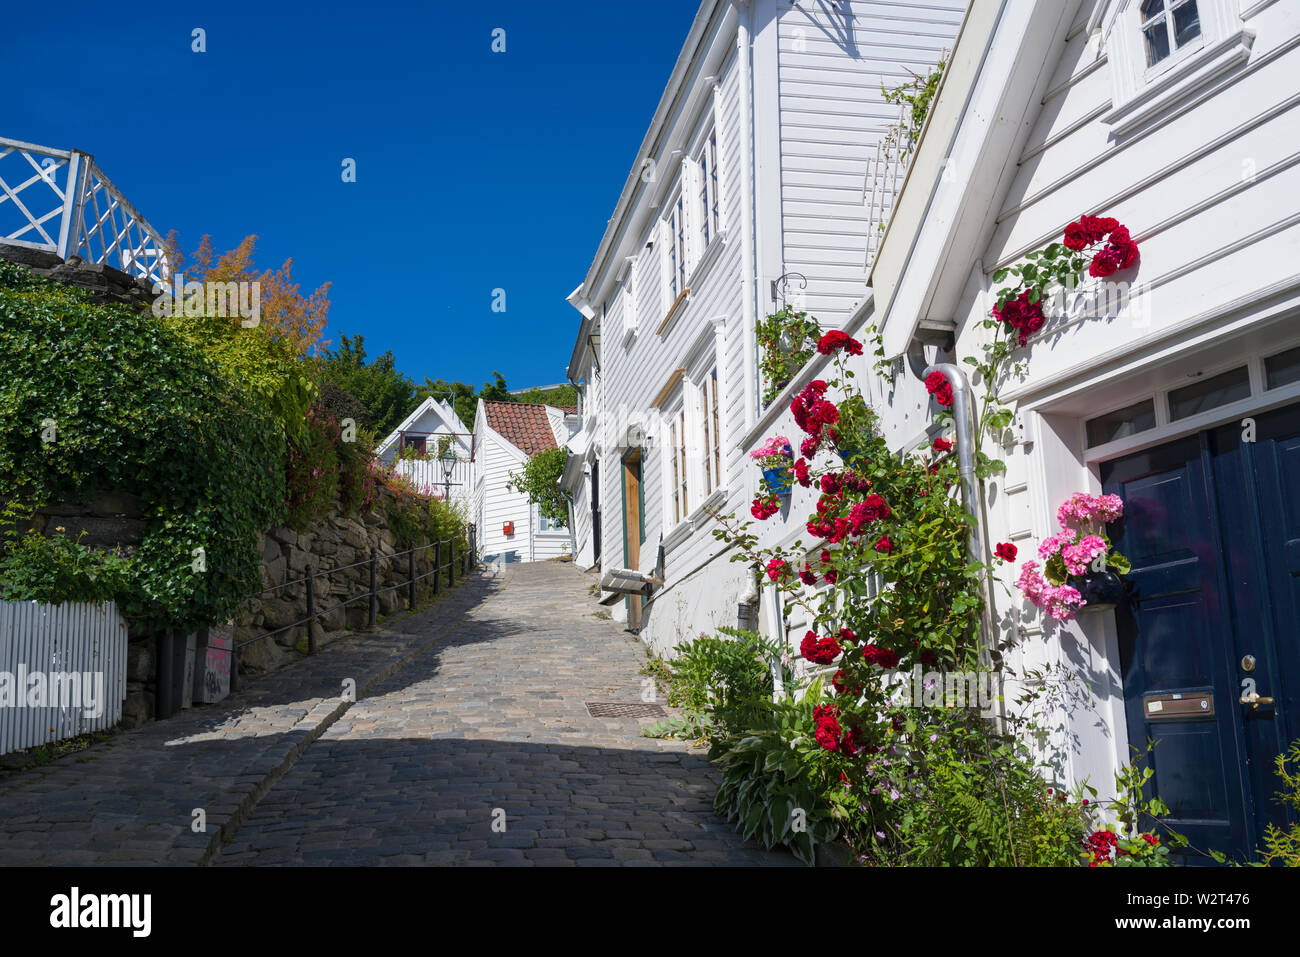 La vieille ville historique de rues de Gamle Stavanger (Norvège) Rizière (vent au milieu de bâtiments en bois historique et de pittoresques maisons. Banque D'Images